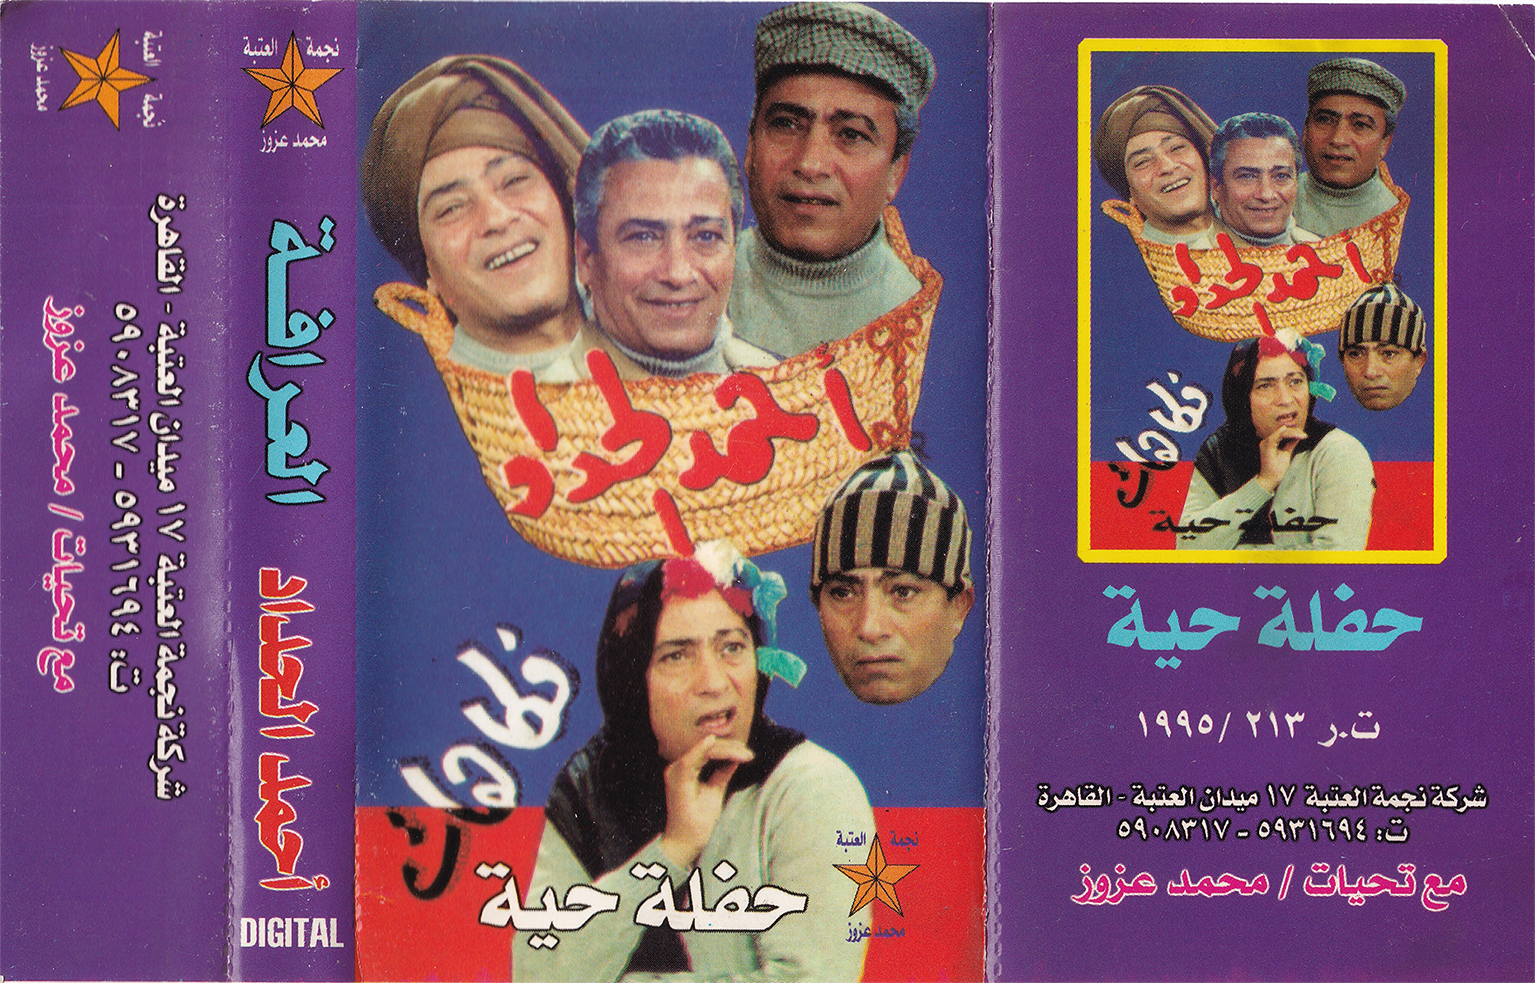 Pochette de cassette. Interprète et acteur : Ahmed El-Haddad ; dessinateur : inconnu. Album sorti en 1995